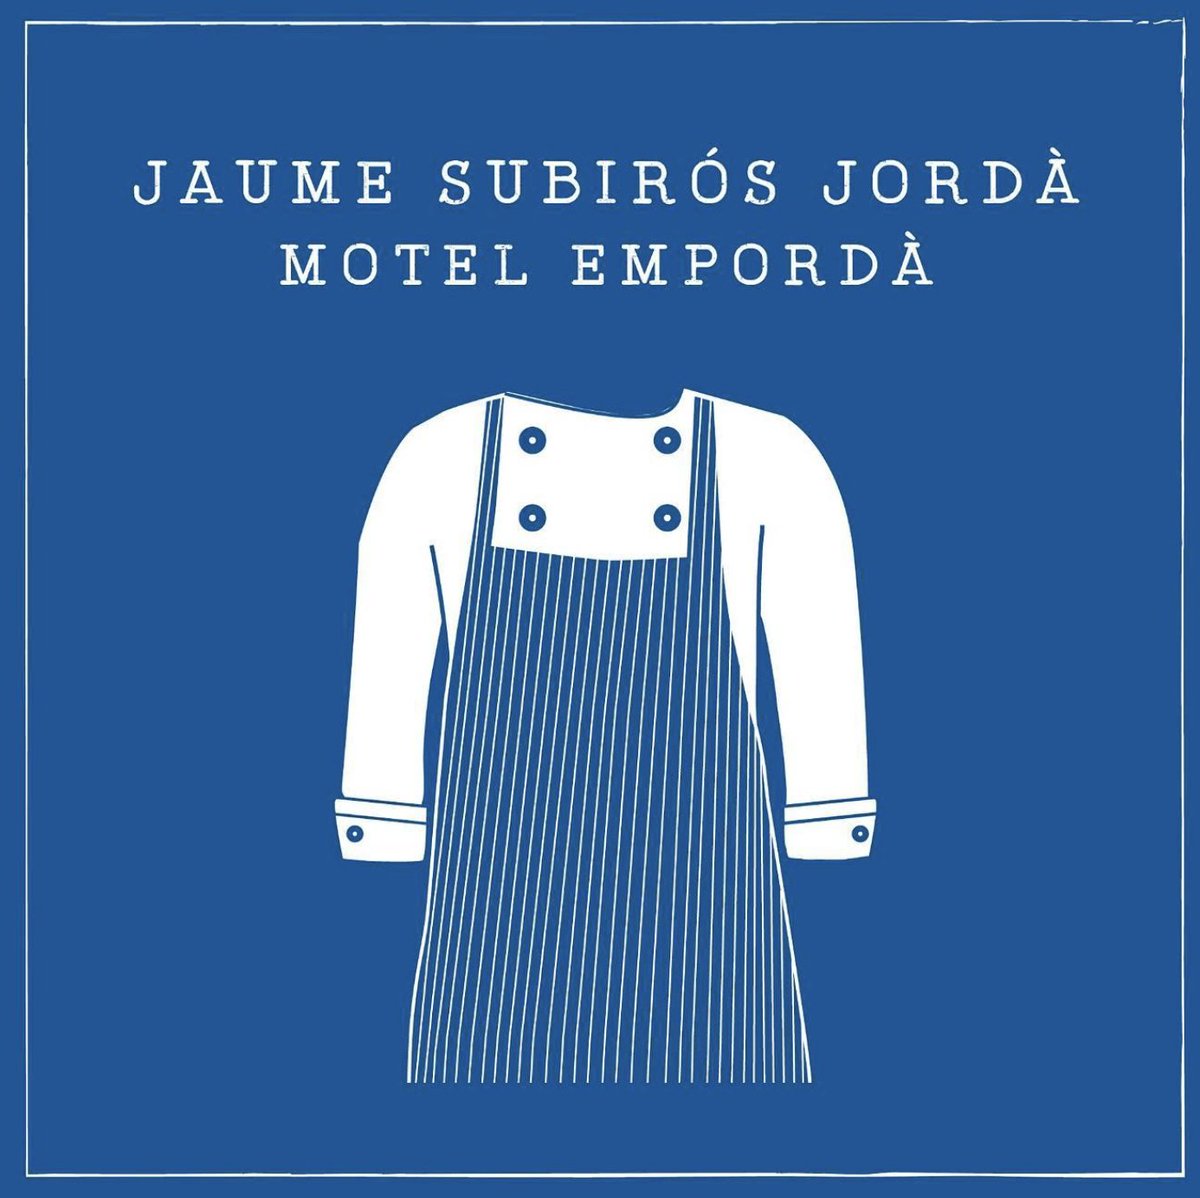 El lunes 11 dentro del ciclo Consell de Savis de @la_boqueria se rendirá homenaje al #Chefs Jaume Subirós de @MotelEmporda La actividad se puede seguir en streaming youtube.com/watch?v=t85NyM… #AgendaFoodista